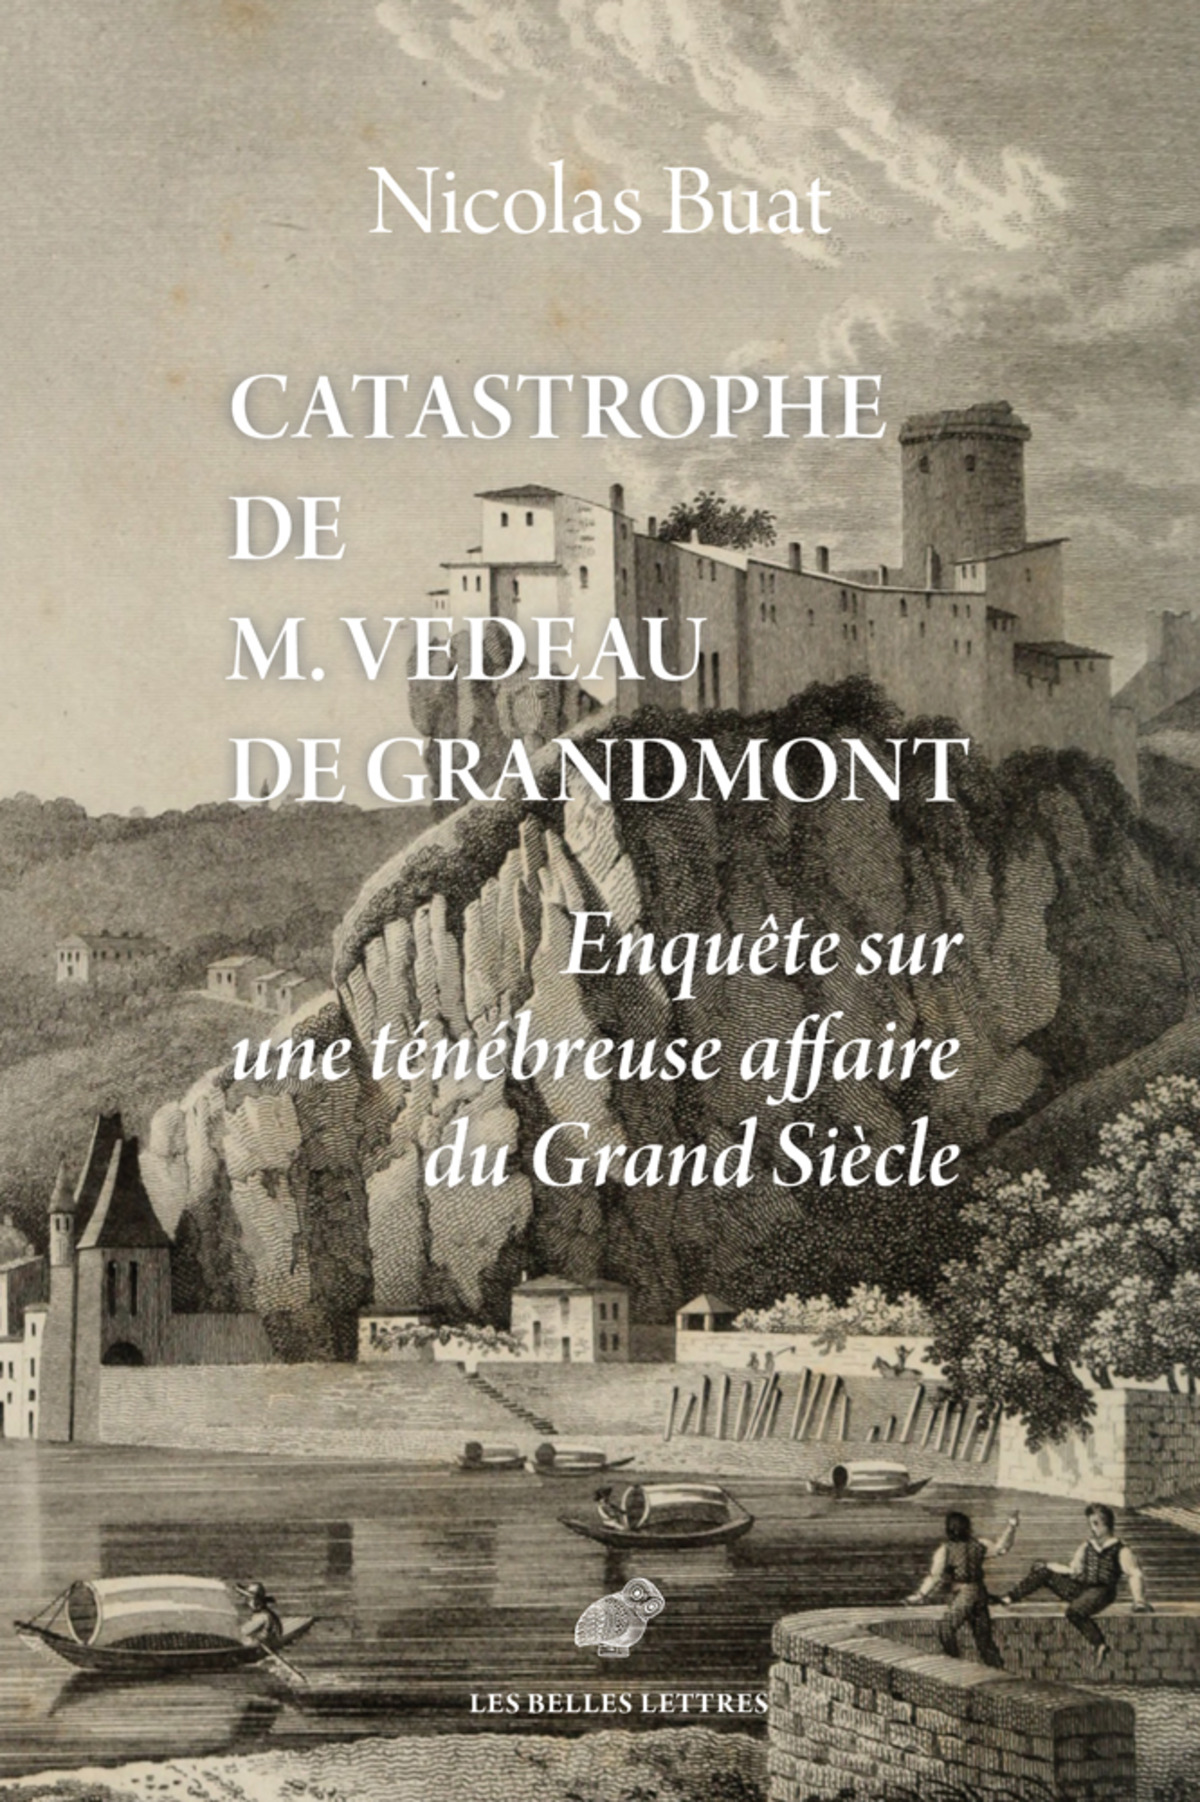 Catastrophe de M. Vedeau de Grandmont